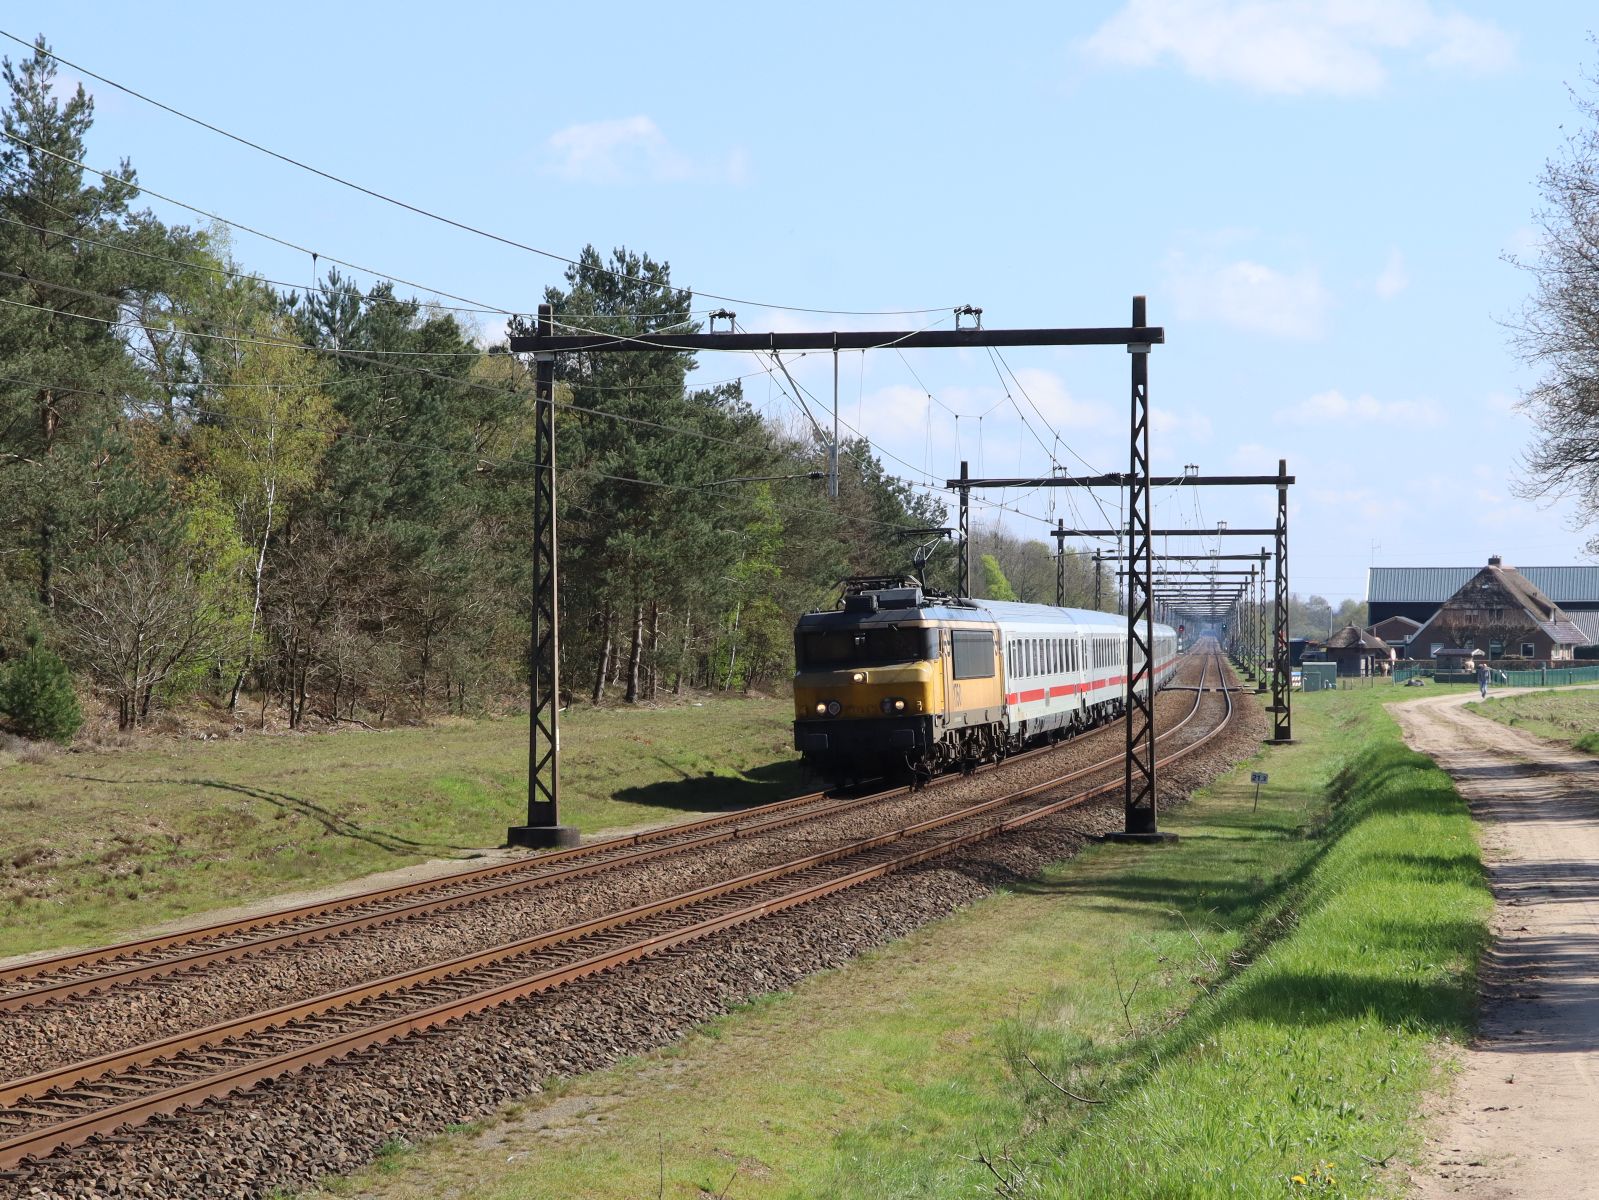 NS Lokomotive 1750 mit Intercity von Berlin nach Amsterdam. Veenweg, Holten 23-04-2023.

NS locomotief 1750 met Intercity van Berlijn naar Amsterdam. Veenweg, Holten 23-04-2023.